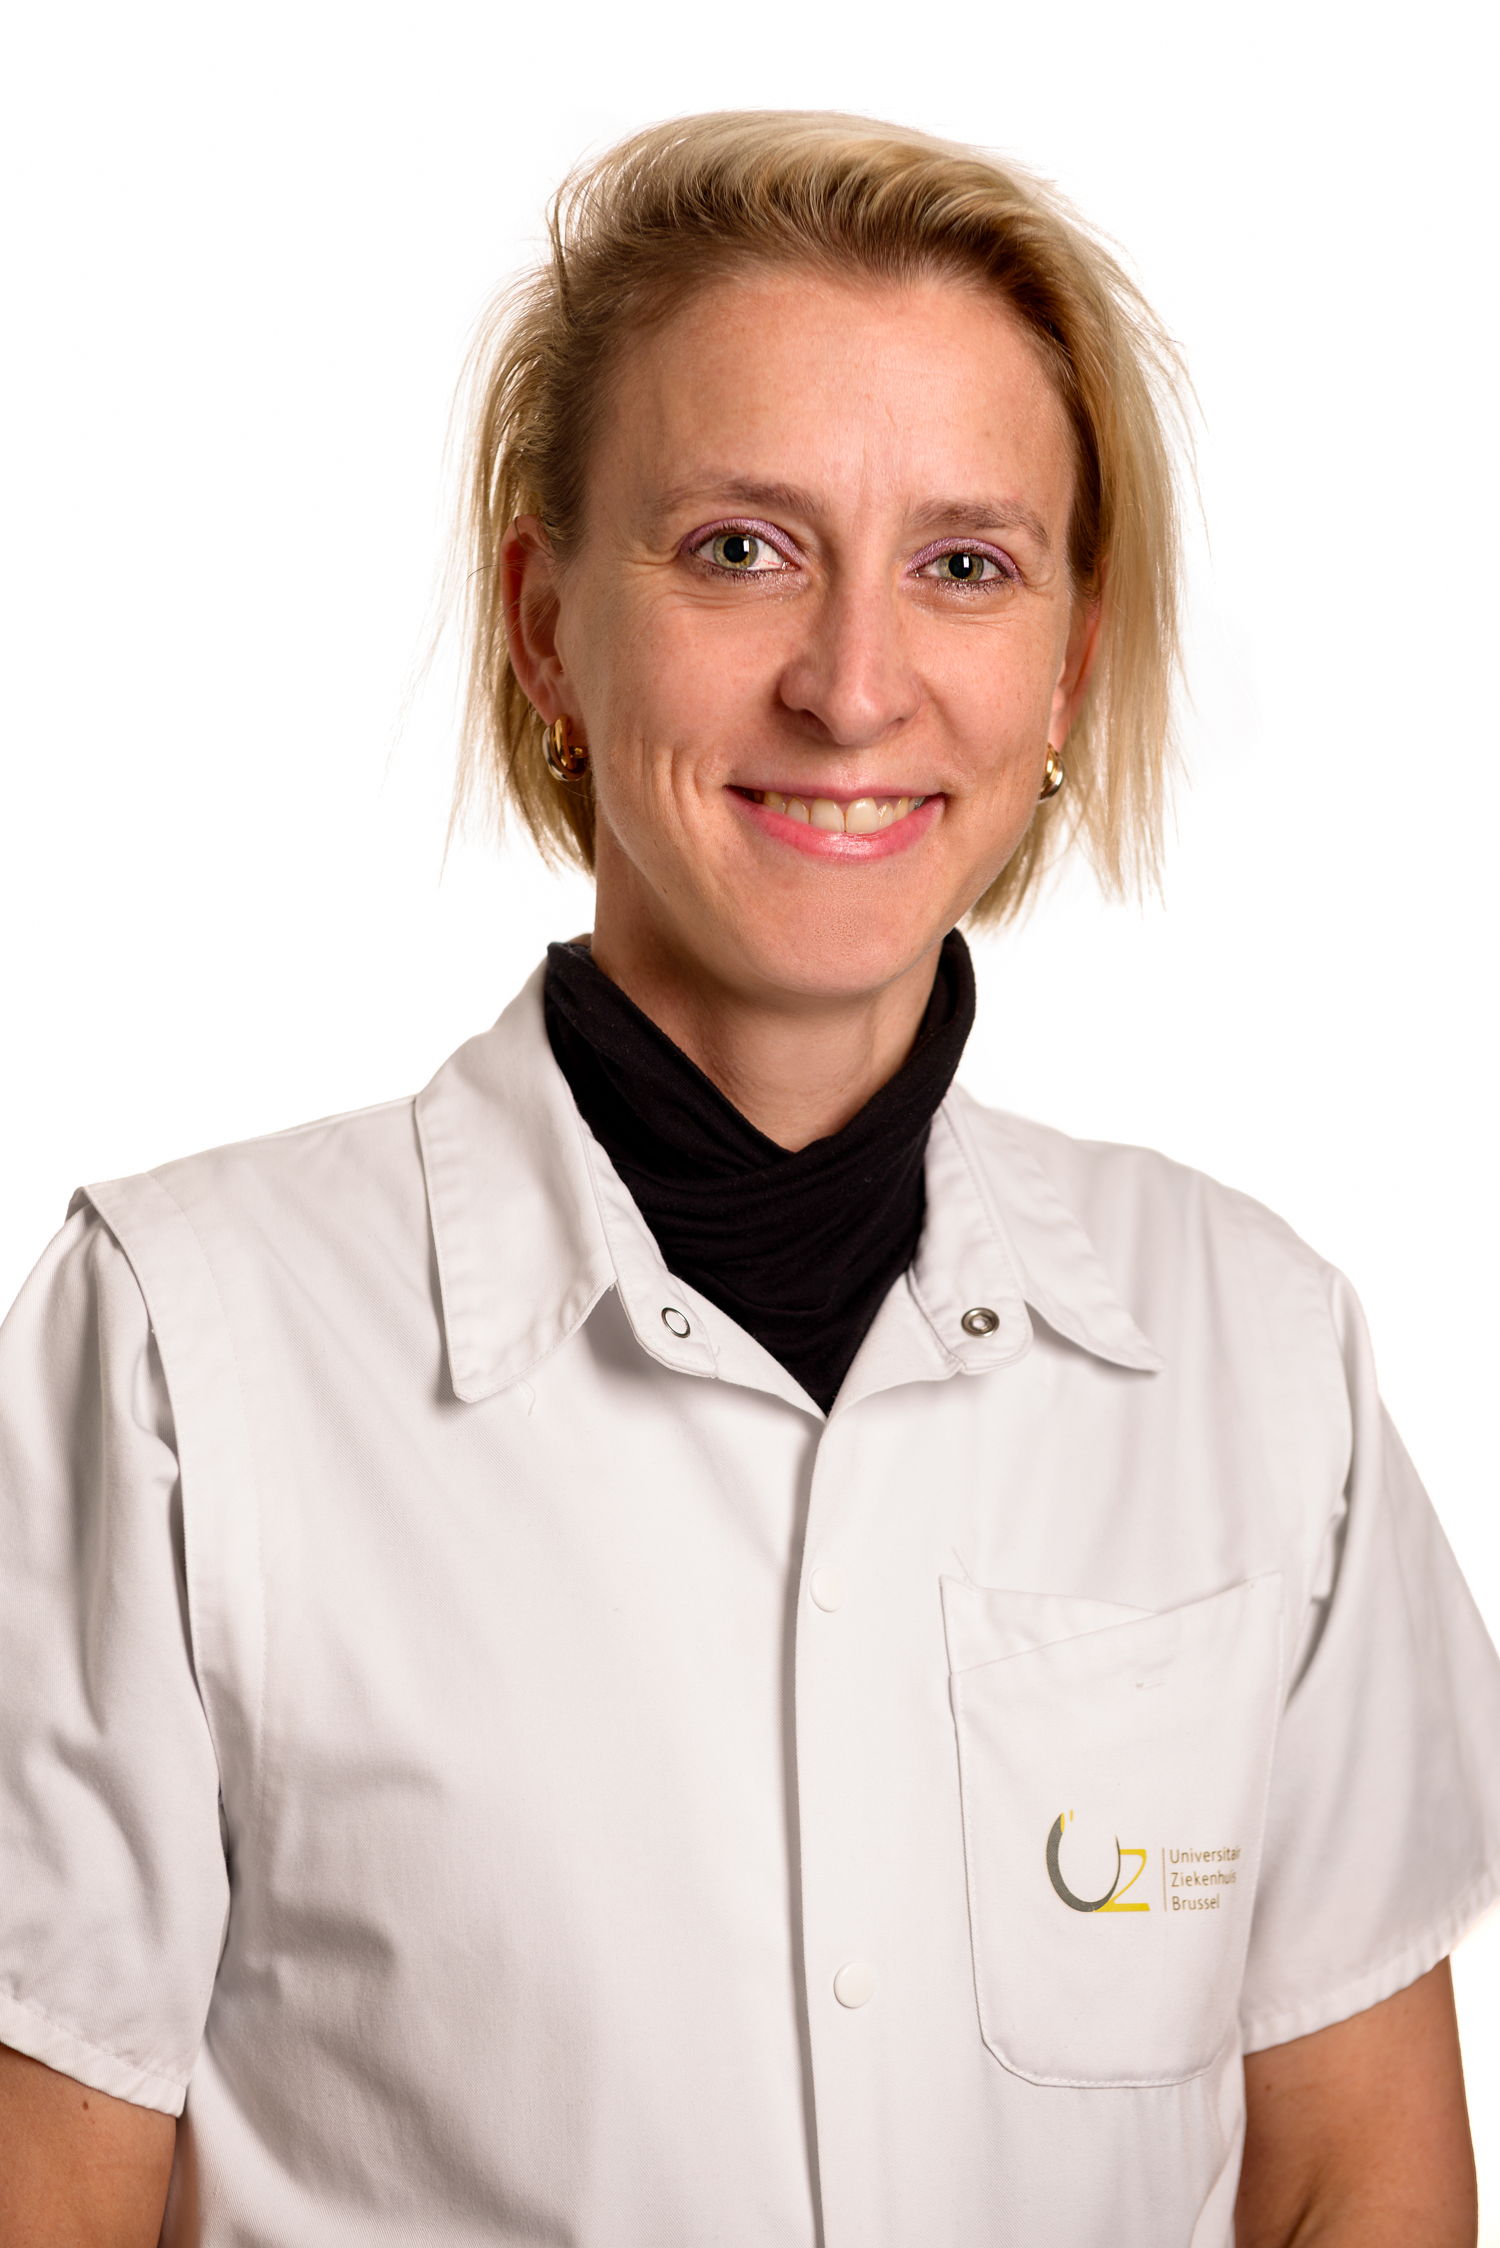 Prof. dr. Elisabeth De Waele, Chef de Clinique de soins intensifs